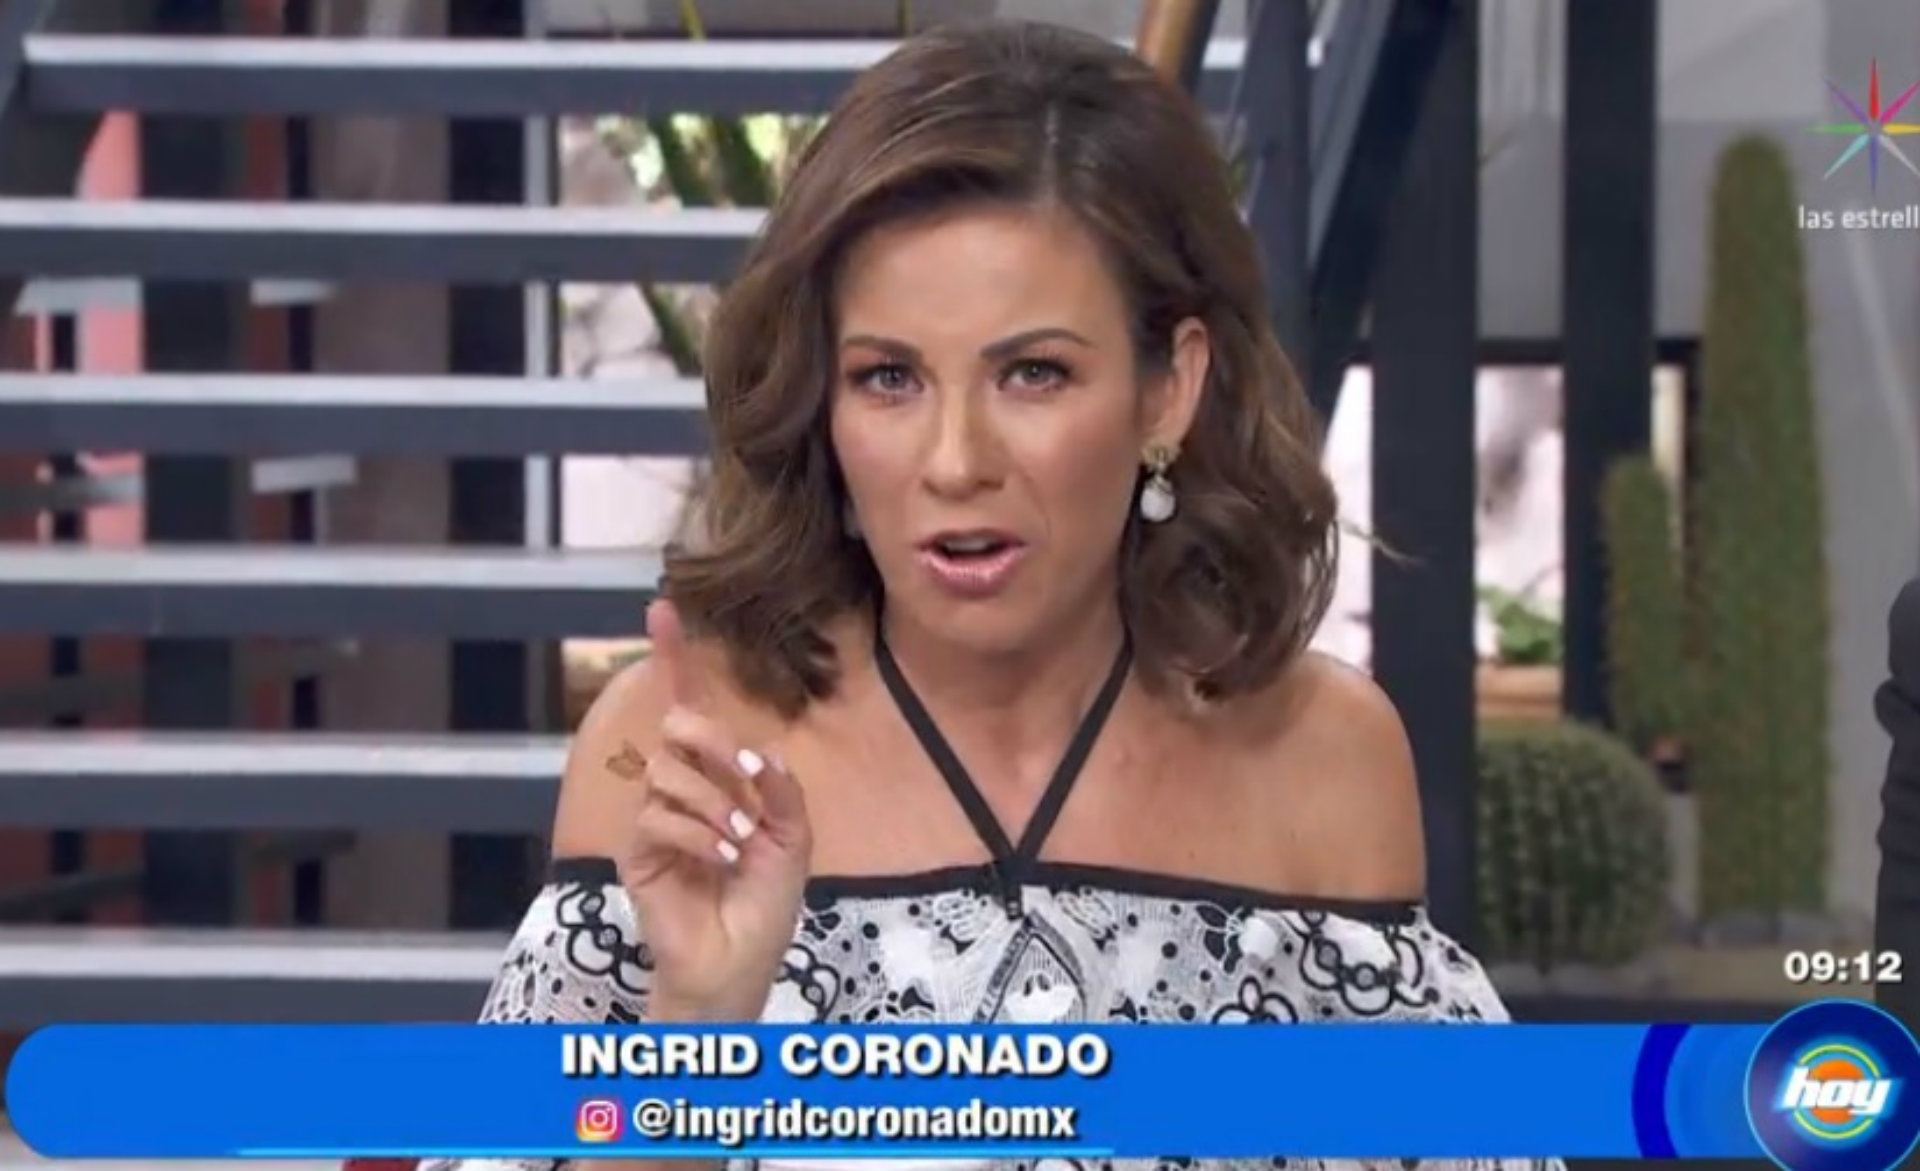 Coronado pensó que nunca estaría en el programa “Hoy” de Televisa